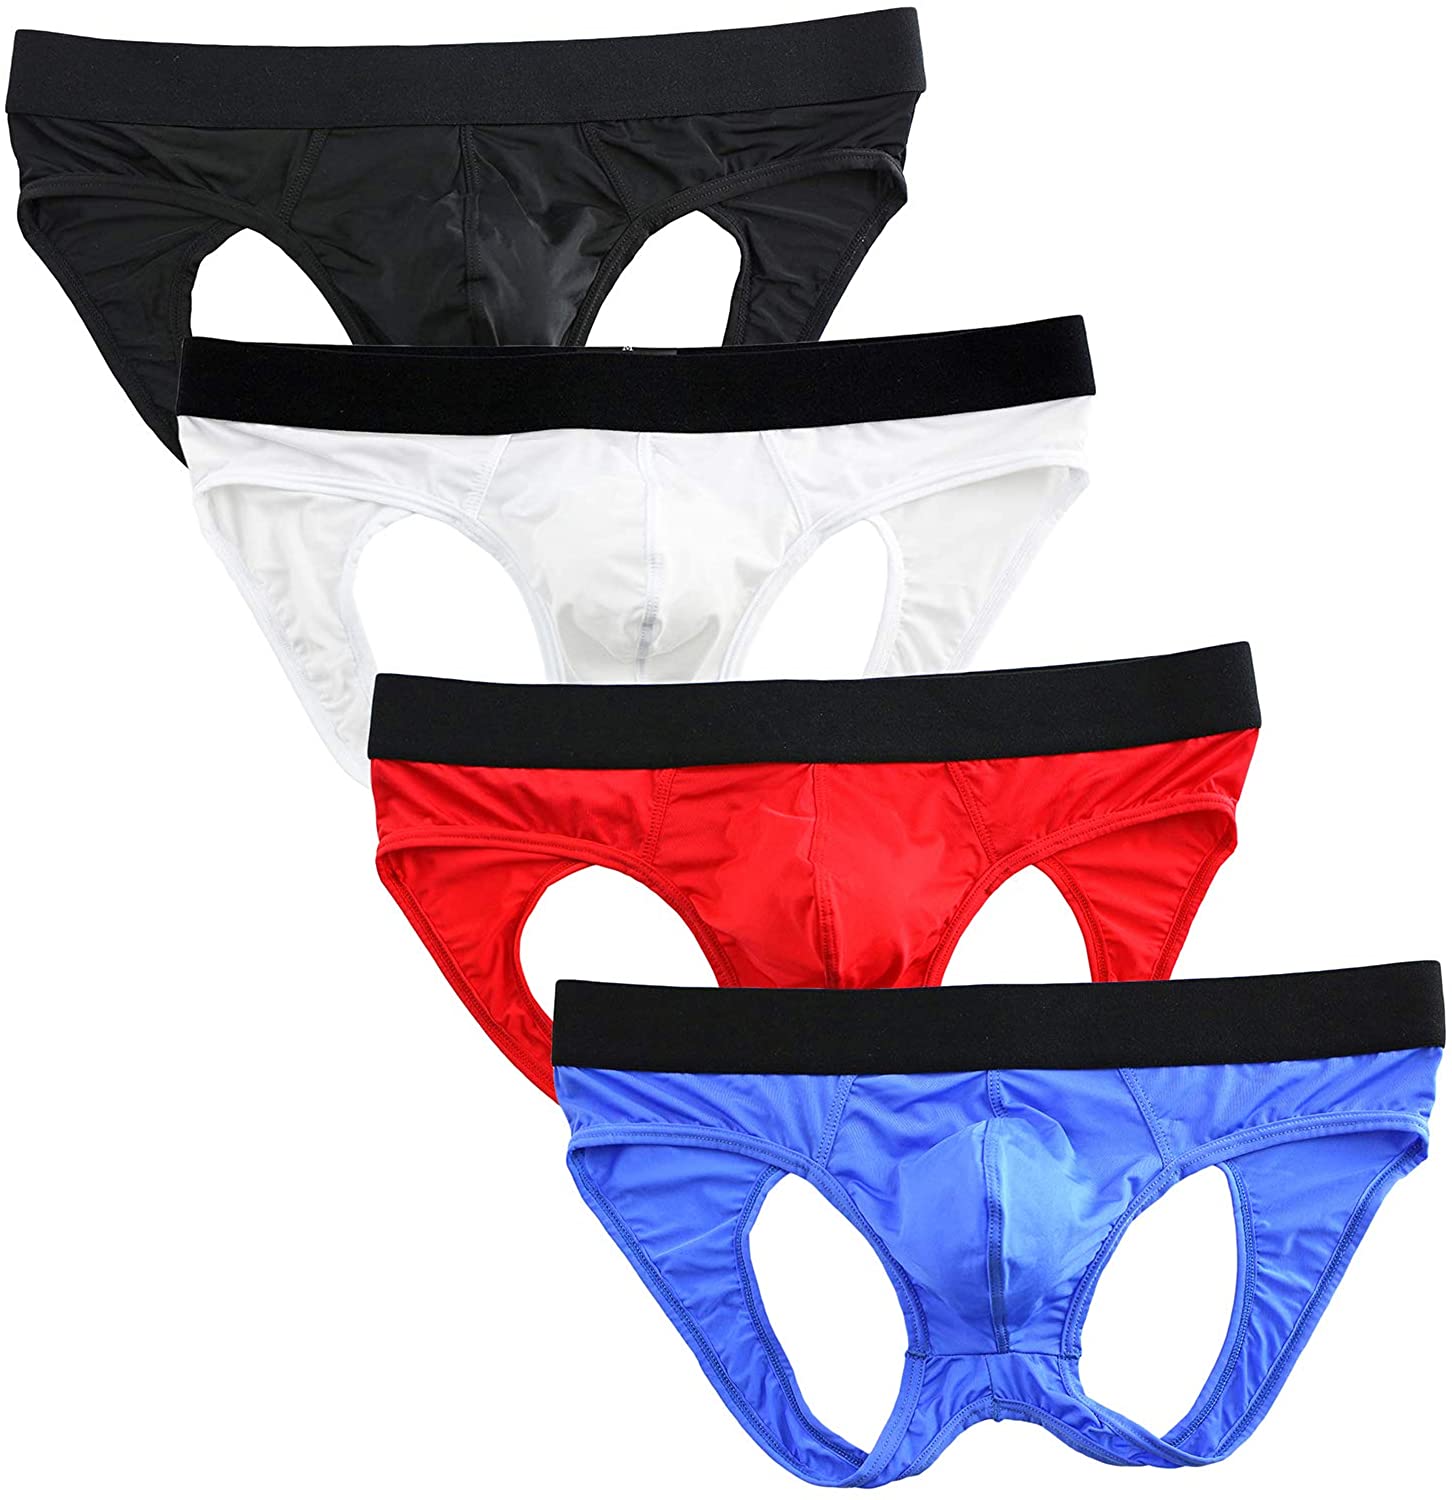 YuKaiChen Men's Jockstrap Athletic Supporter Underwear Briefs Low Rise ...